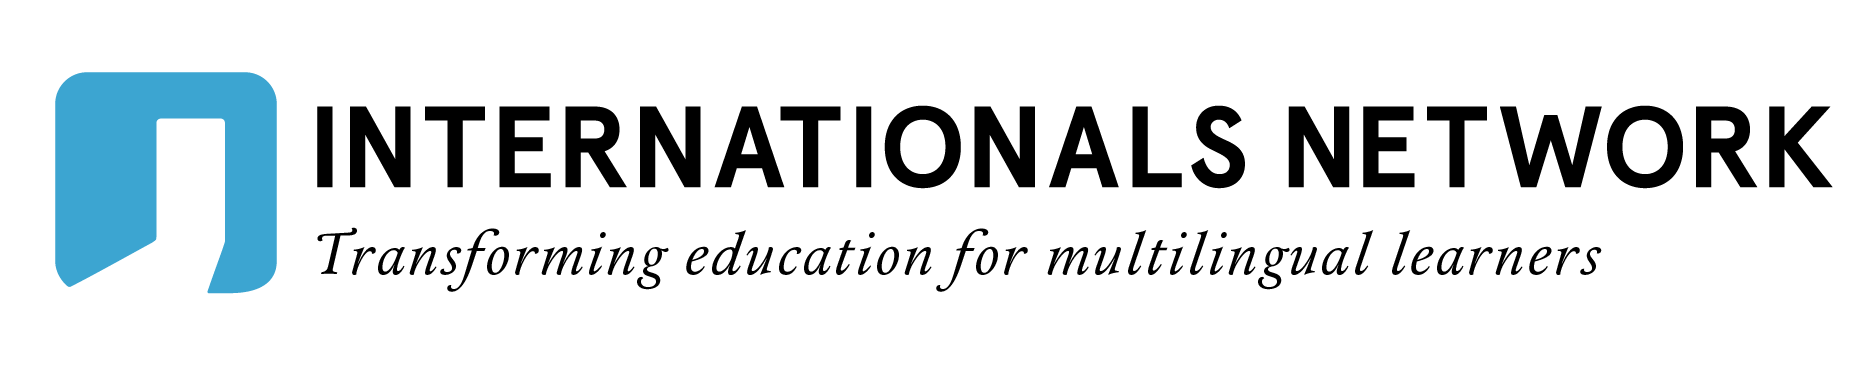 International Networks Logo.png